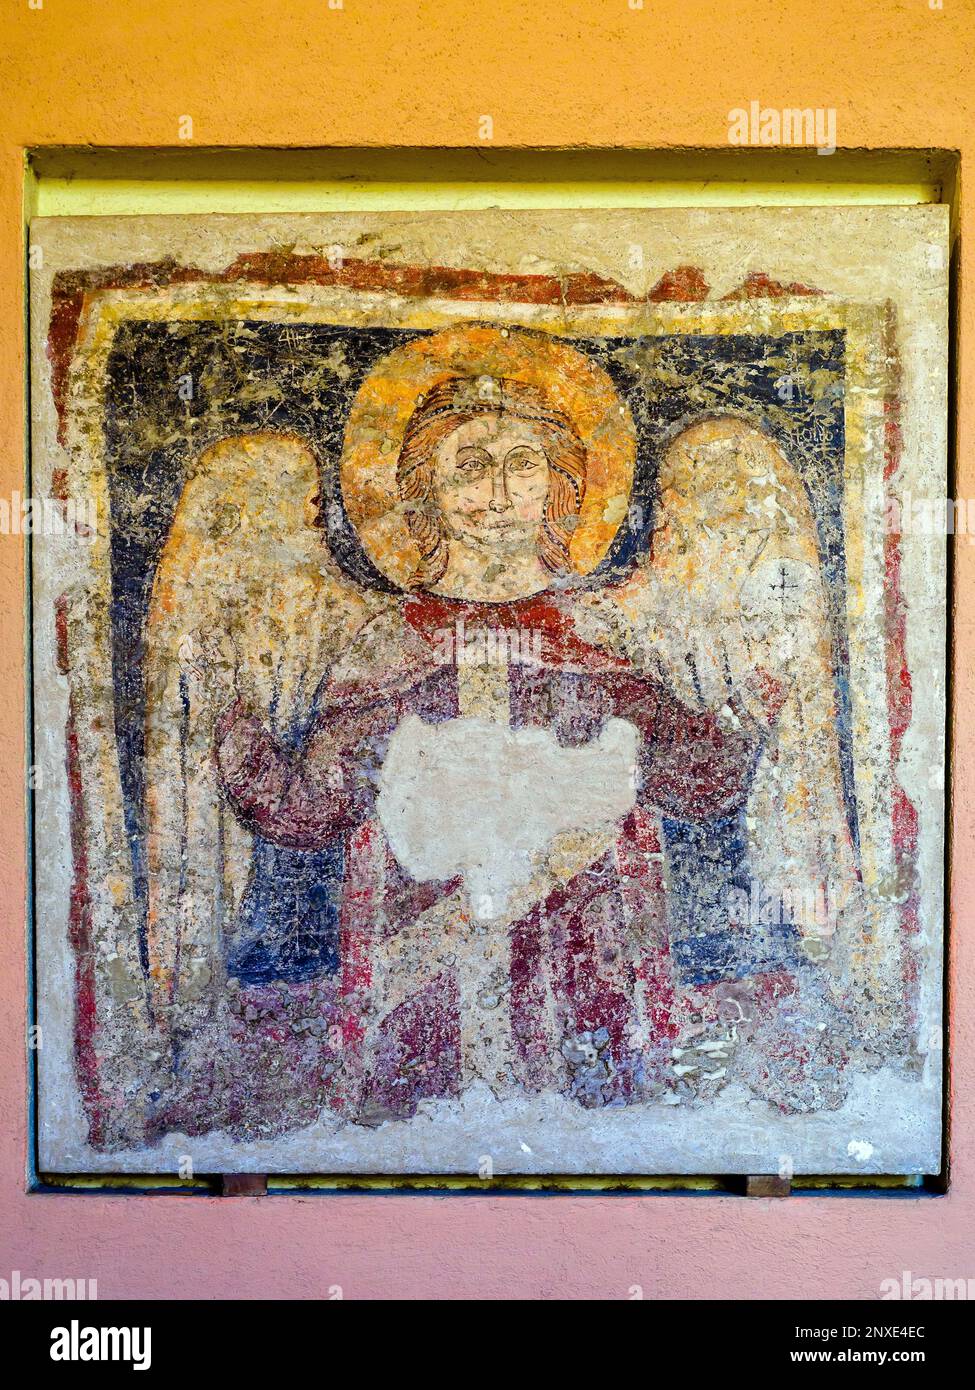 Archangel von Anonym Sizilianisch (13. Jahrhundert) - Kunstgalerie für die sizilianische Region im Palazzo Abatellis - Palermo, Sizilien, Italien Stockfoto